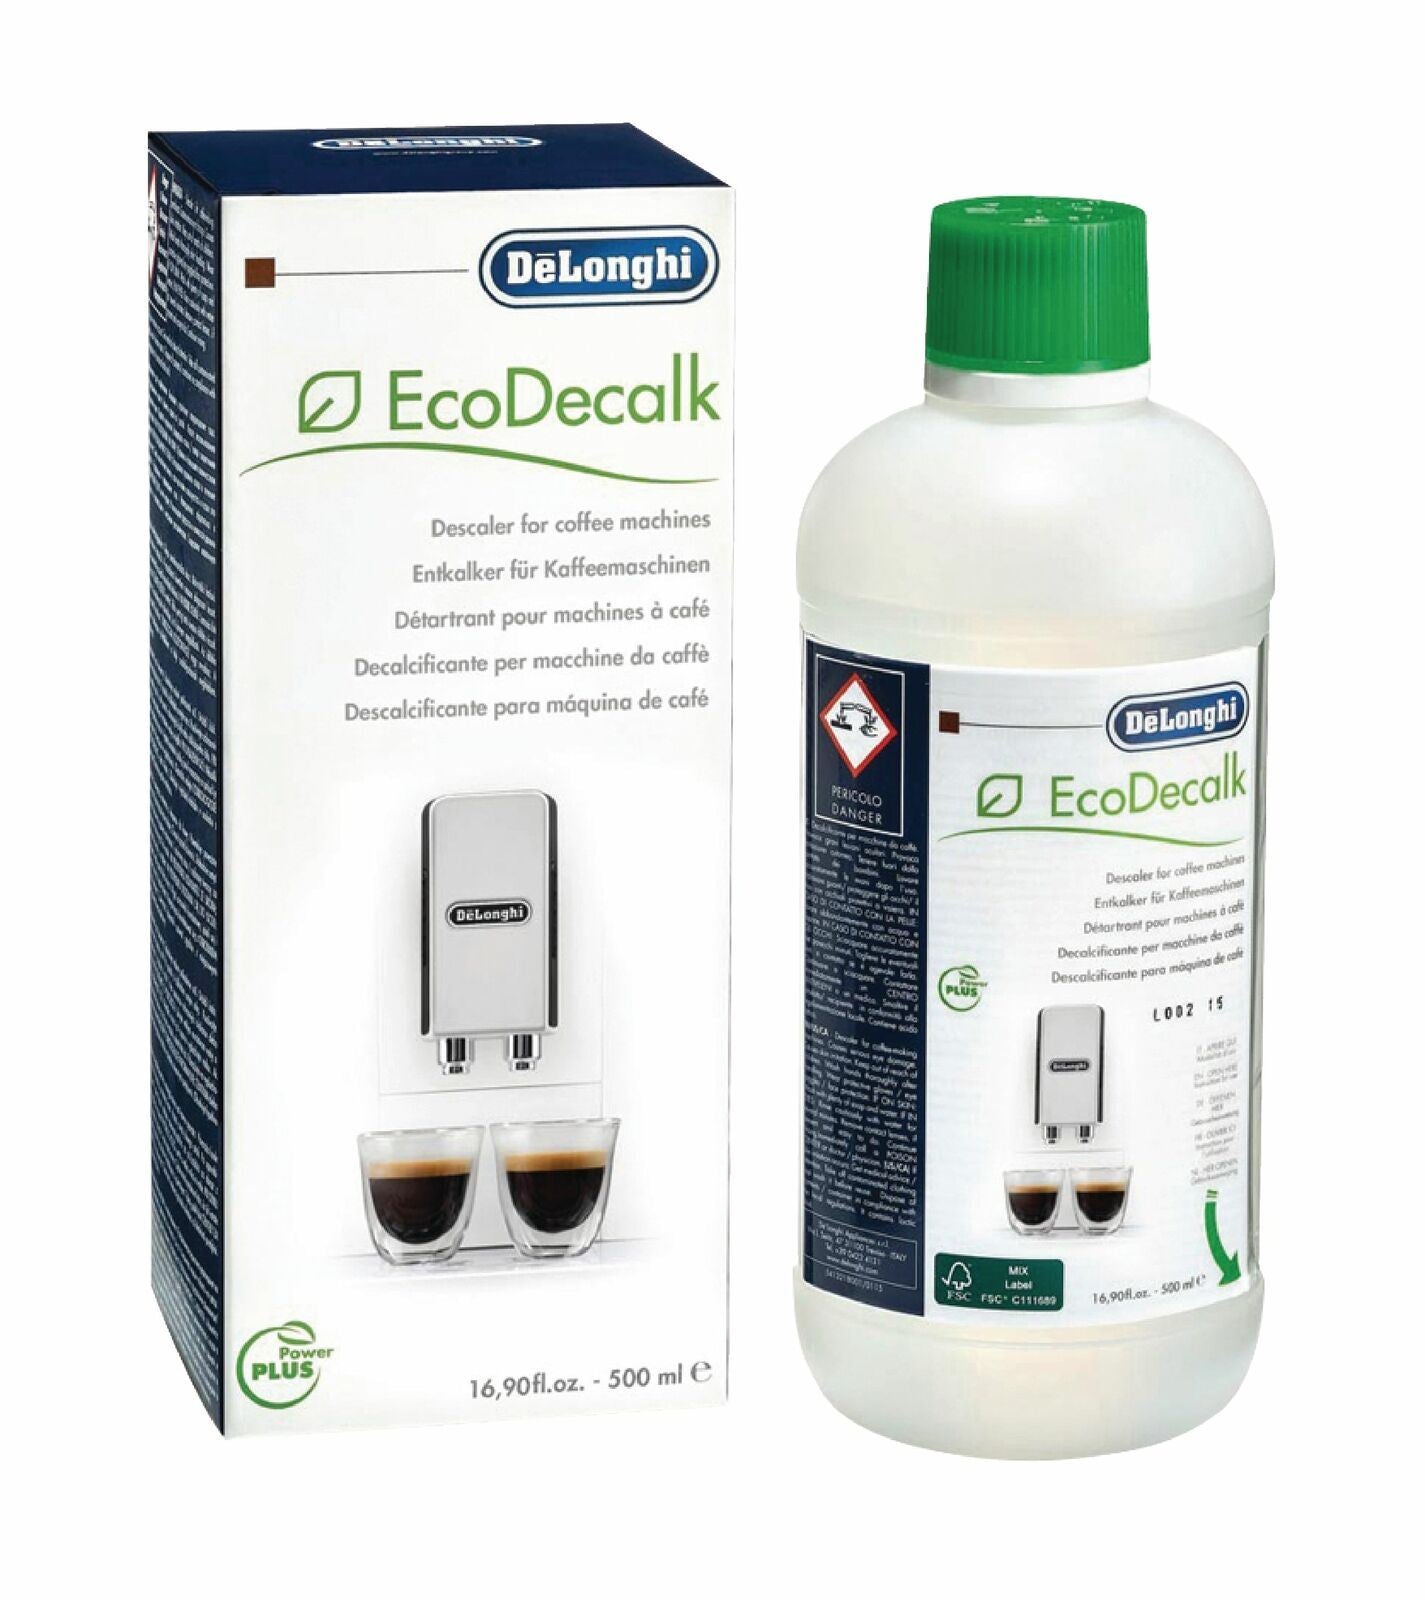 De'Longhi Pump Espresso Coffee Machines Accessories - EcoDecalk